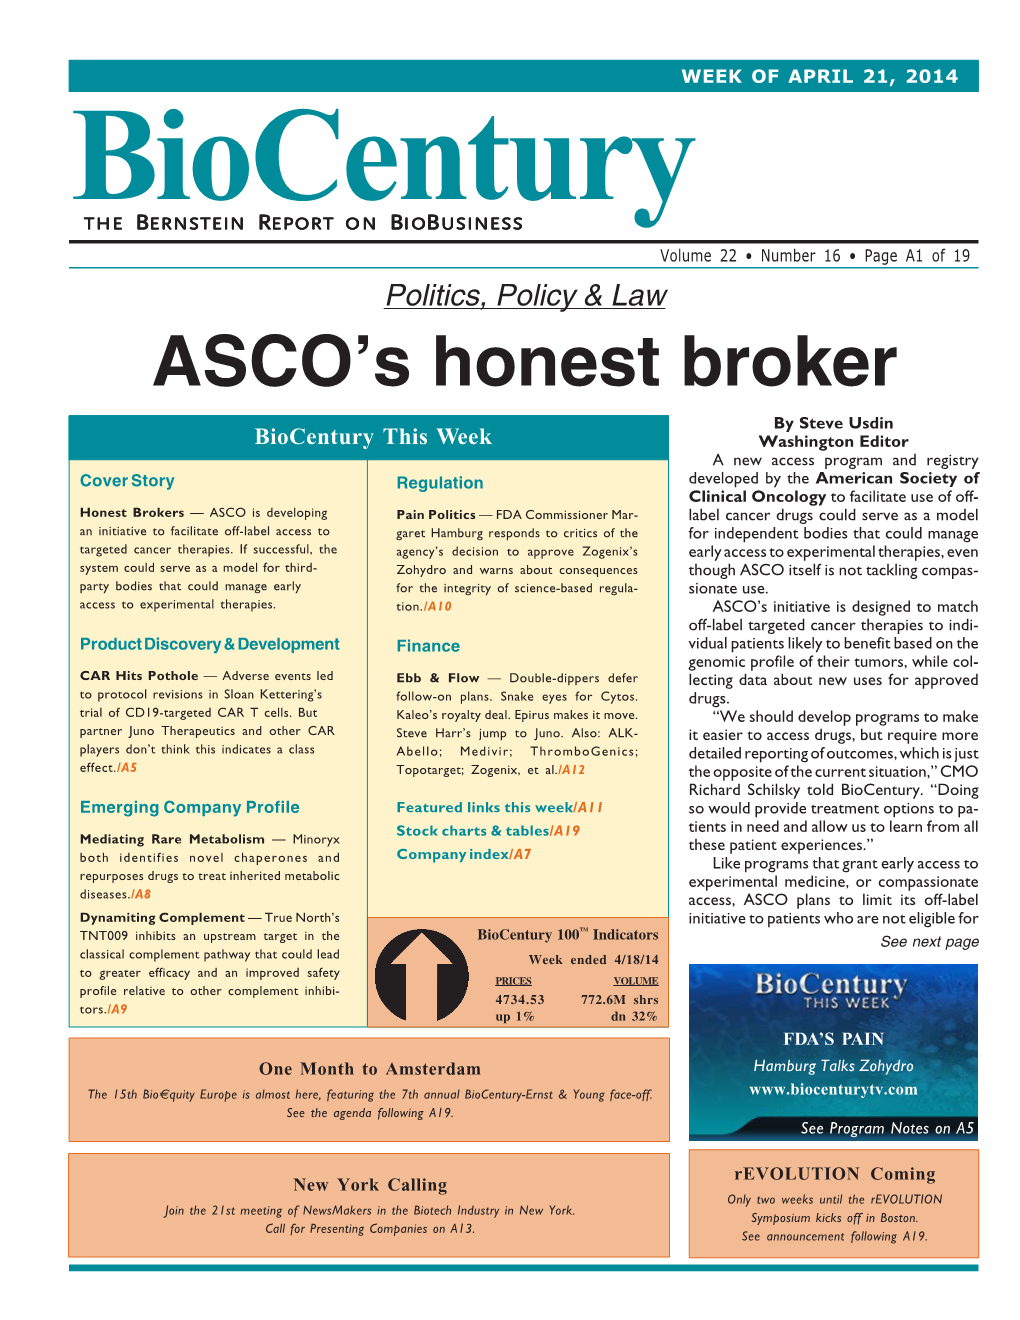 ASCO's Honest Broker